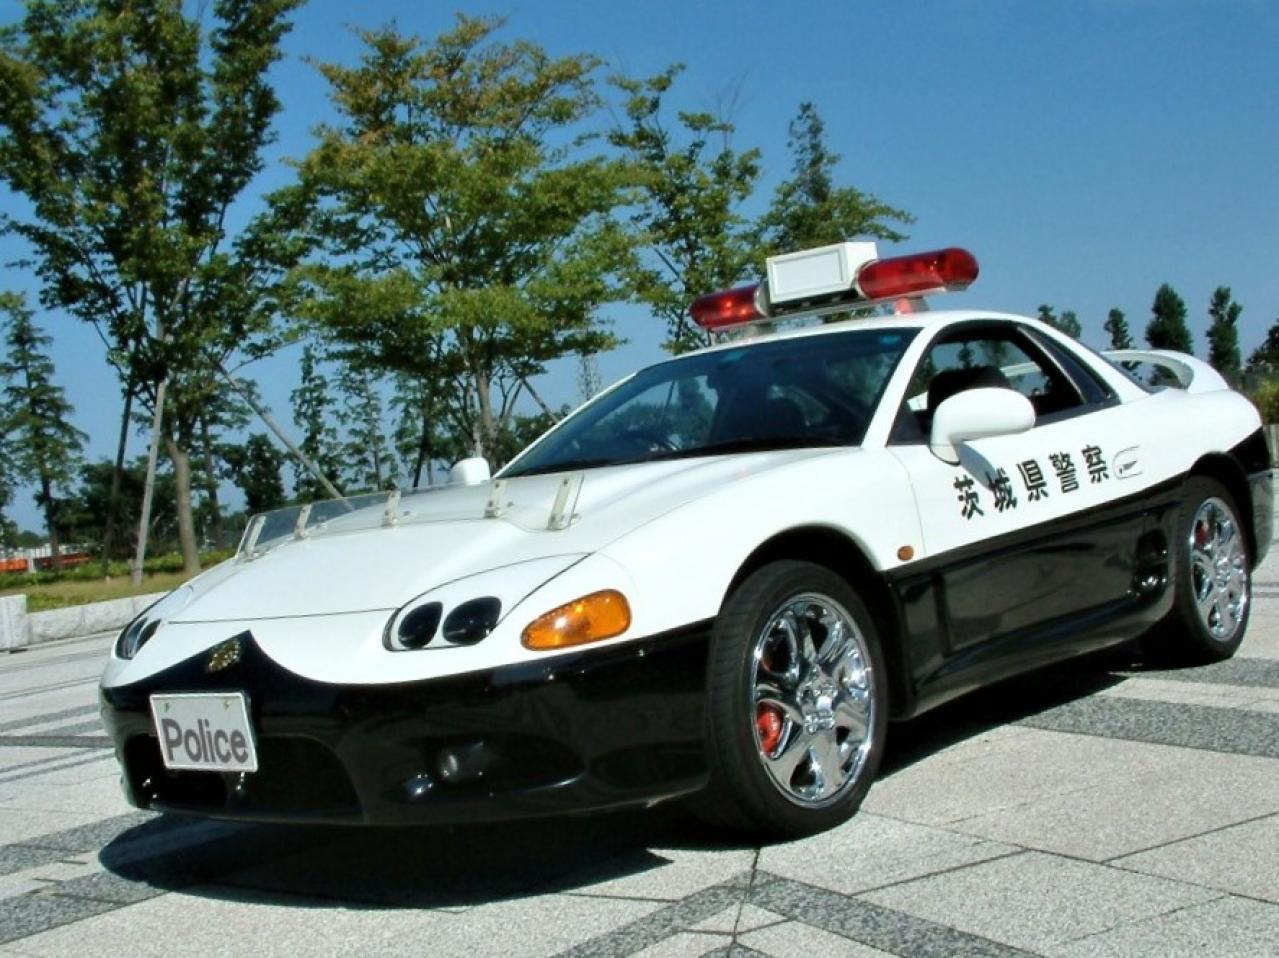 ちょっとイケてる茨城県警のホームページに三菱gtoパトカーの 壁紙 を発見 しかもレーダーパトカー仕様 交通取締情報 Motor Fan モーターファン